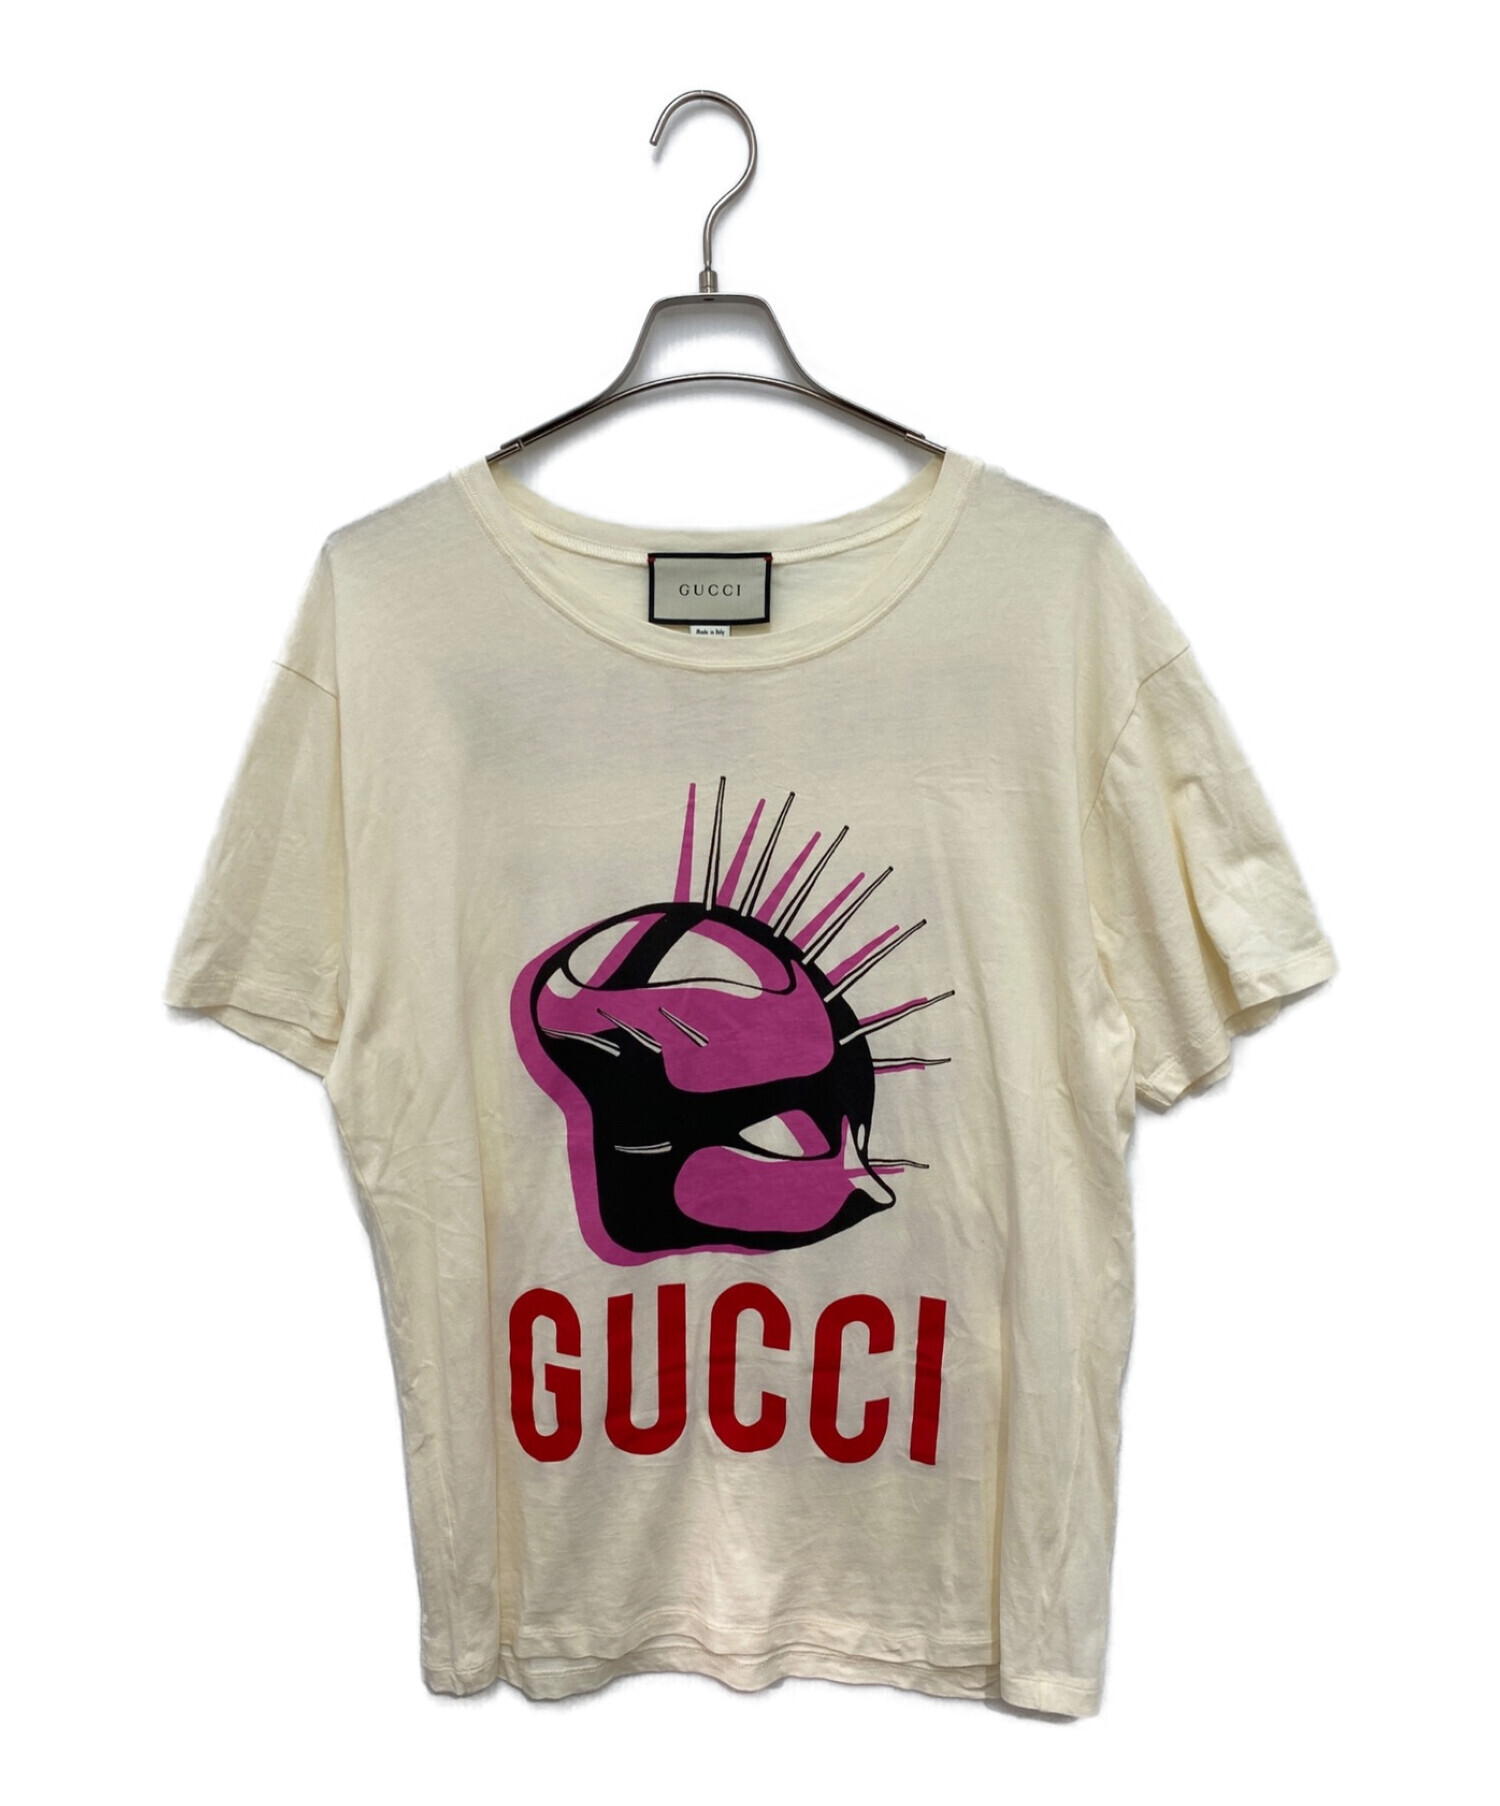 中古 古着通販 Gucci グッチ Mask T Shirt アイボリー サイズ L ブランド 古着通販 トレファク公式 Trefac Fashion